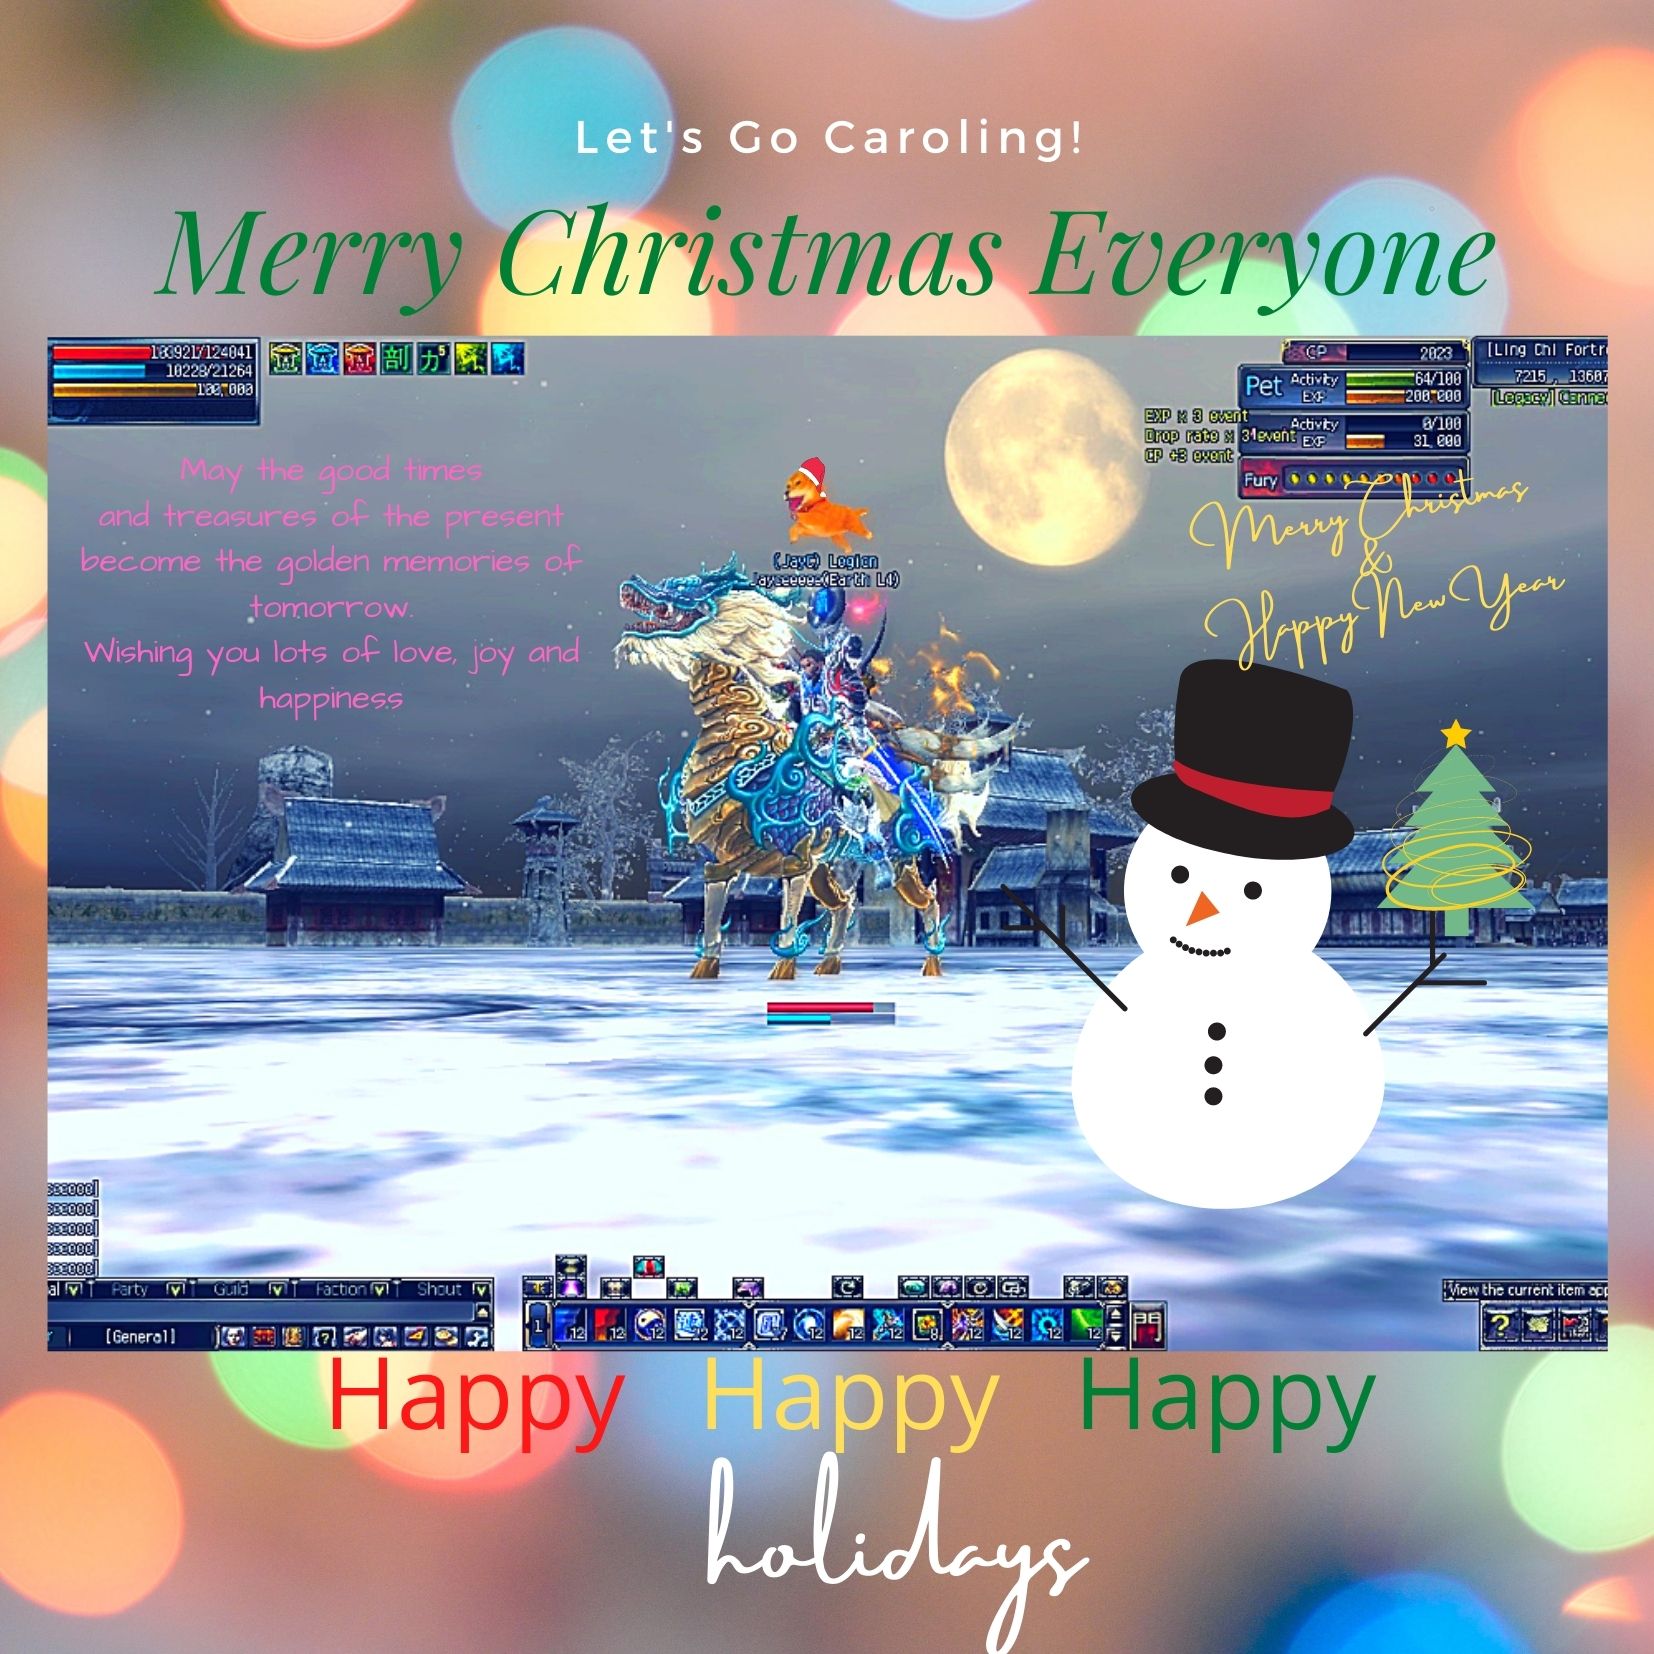 Let's Go Caroling!.jpg